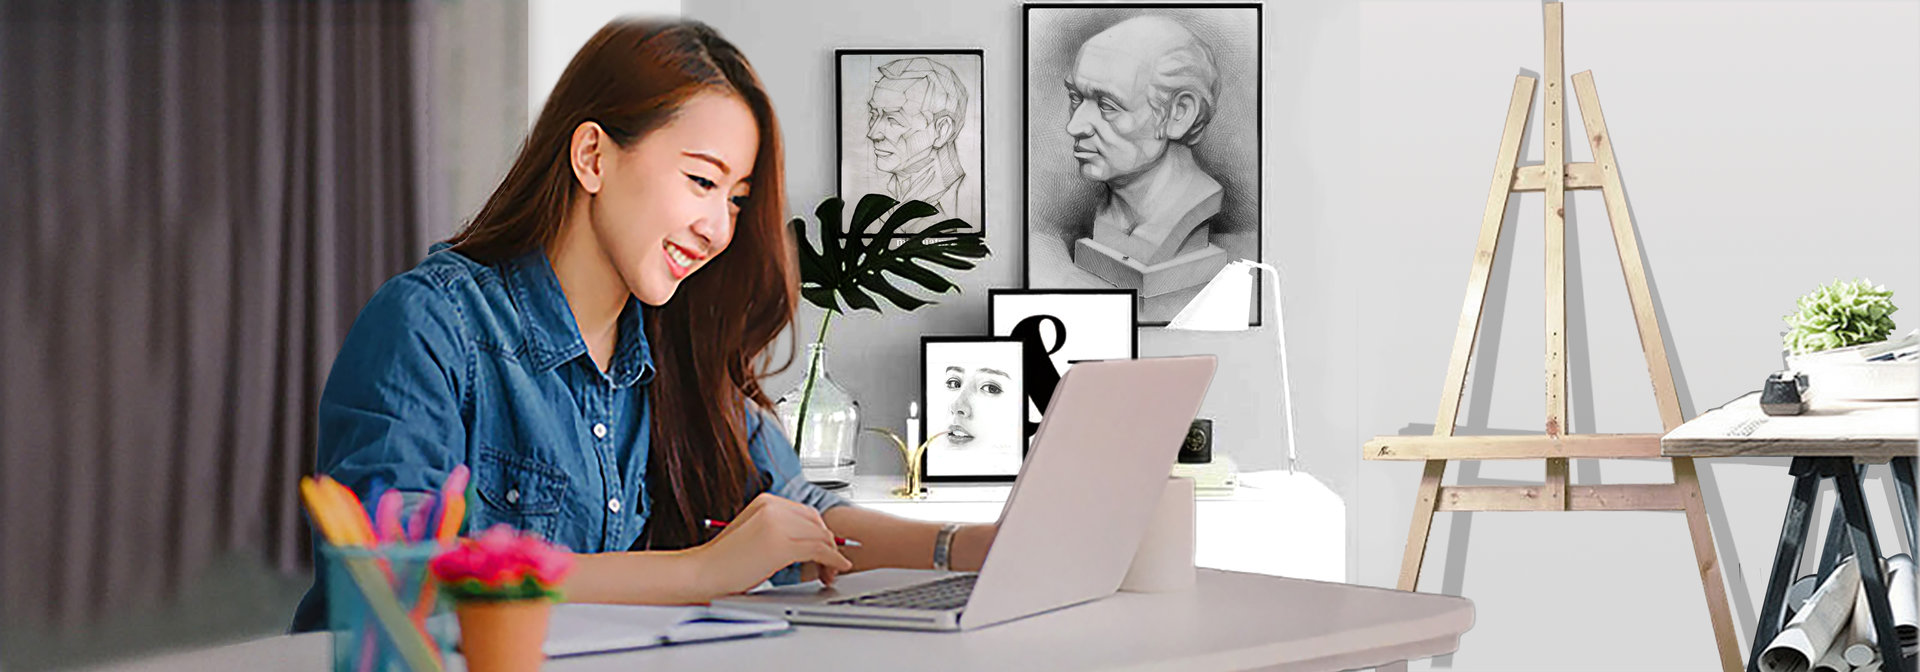 Online Khóa học Miễn Phí Về Vẽ Tranh Bằng Màu Acrylic Cơ Bản  iVolunteer  Vietnam